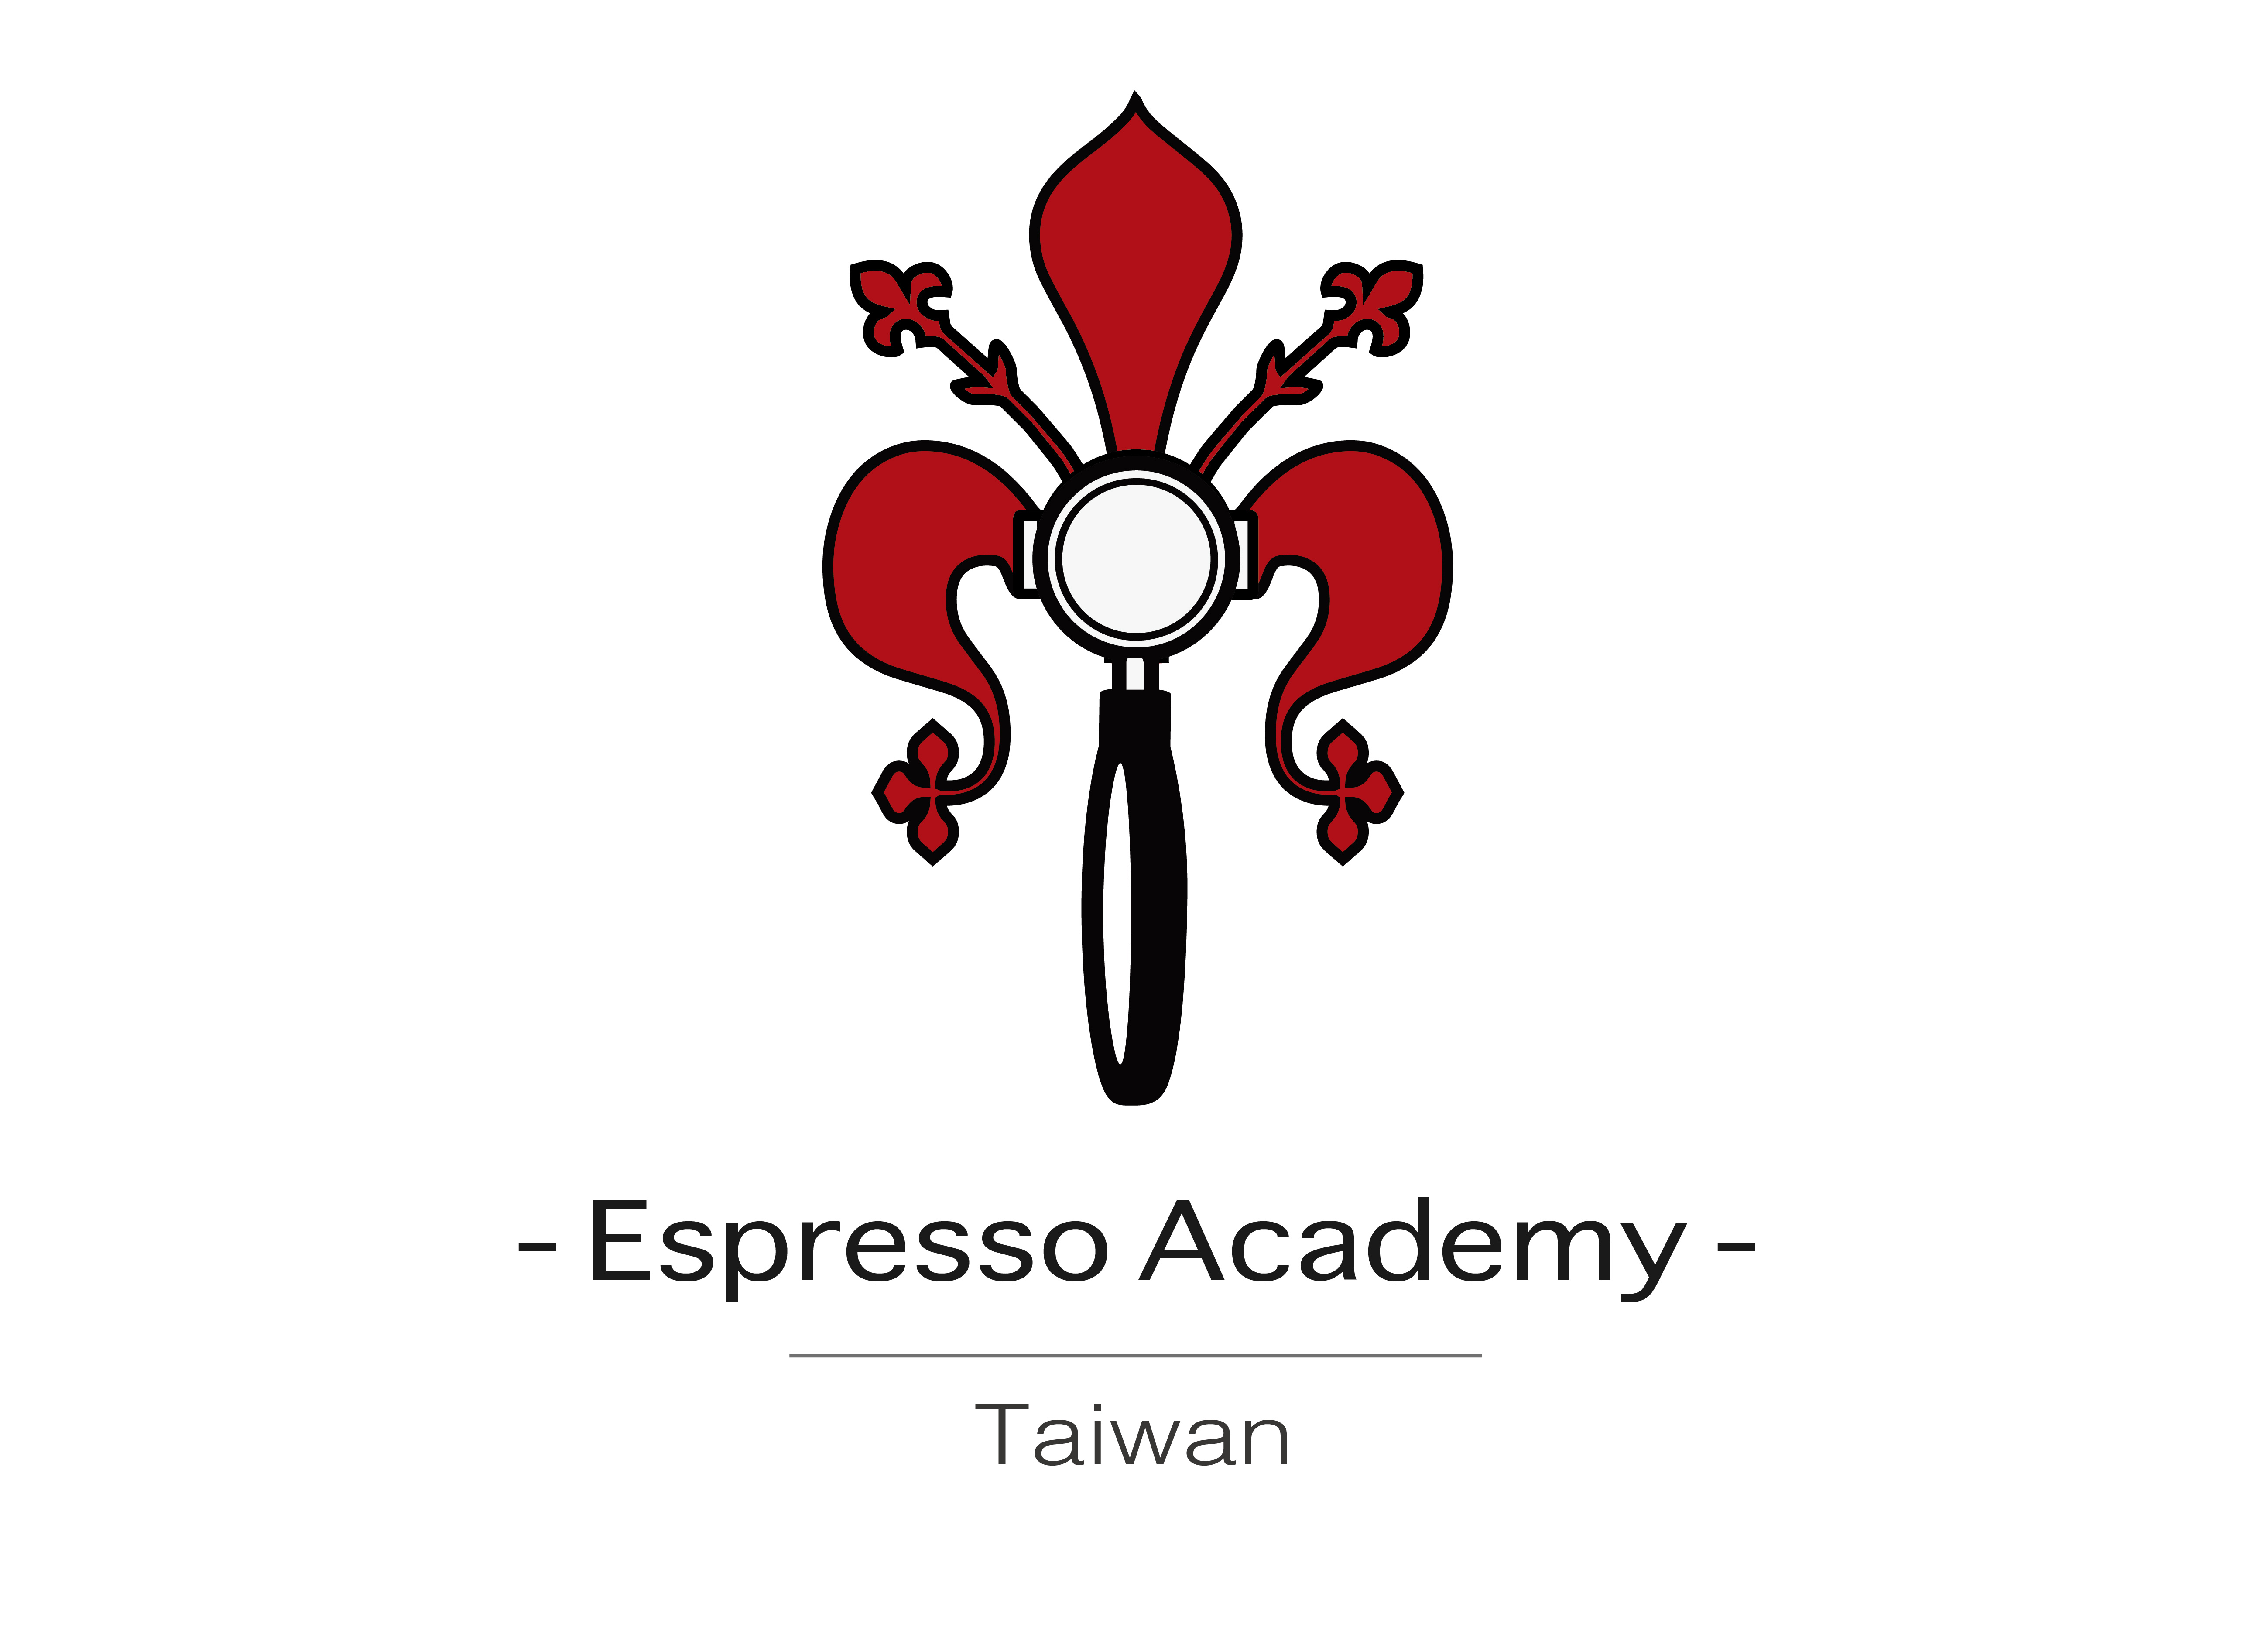 Logo espresso Academy-Taiwan